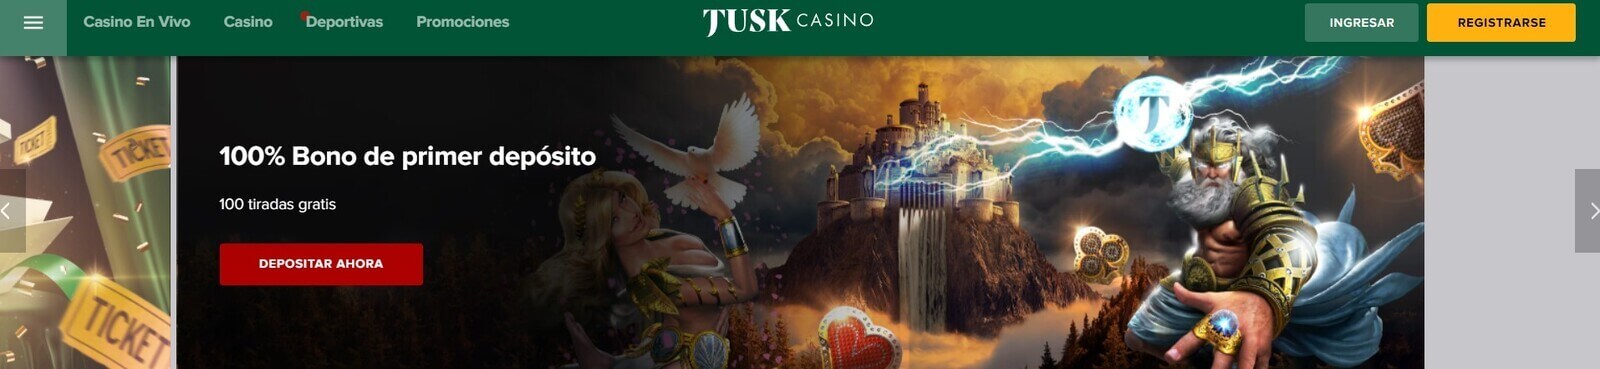 Página web de Tusk Casino